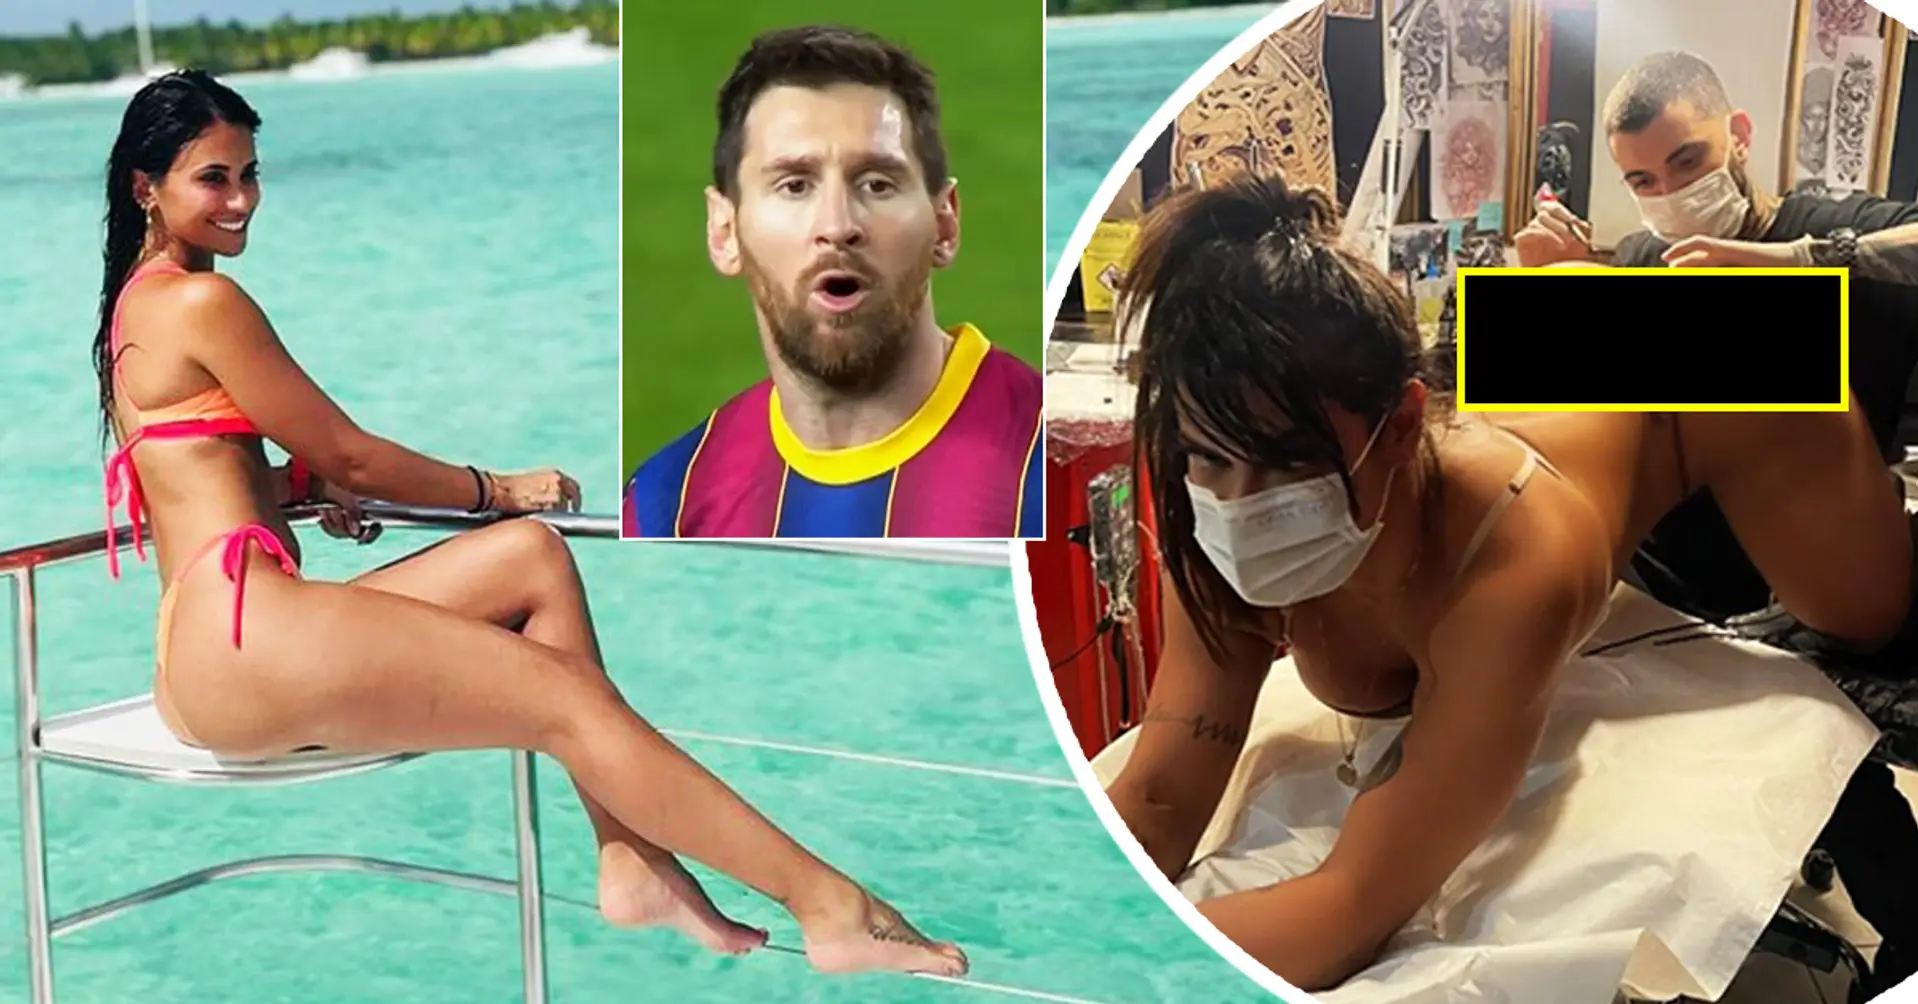 Rivelazione: Perché la moglie di Messi, Antonella Roccuzzo, ha bloccato Miss BumBum su Instagram